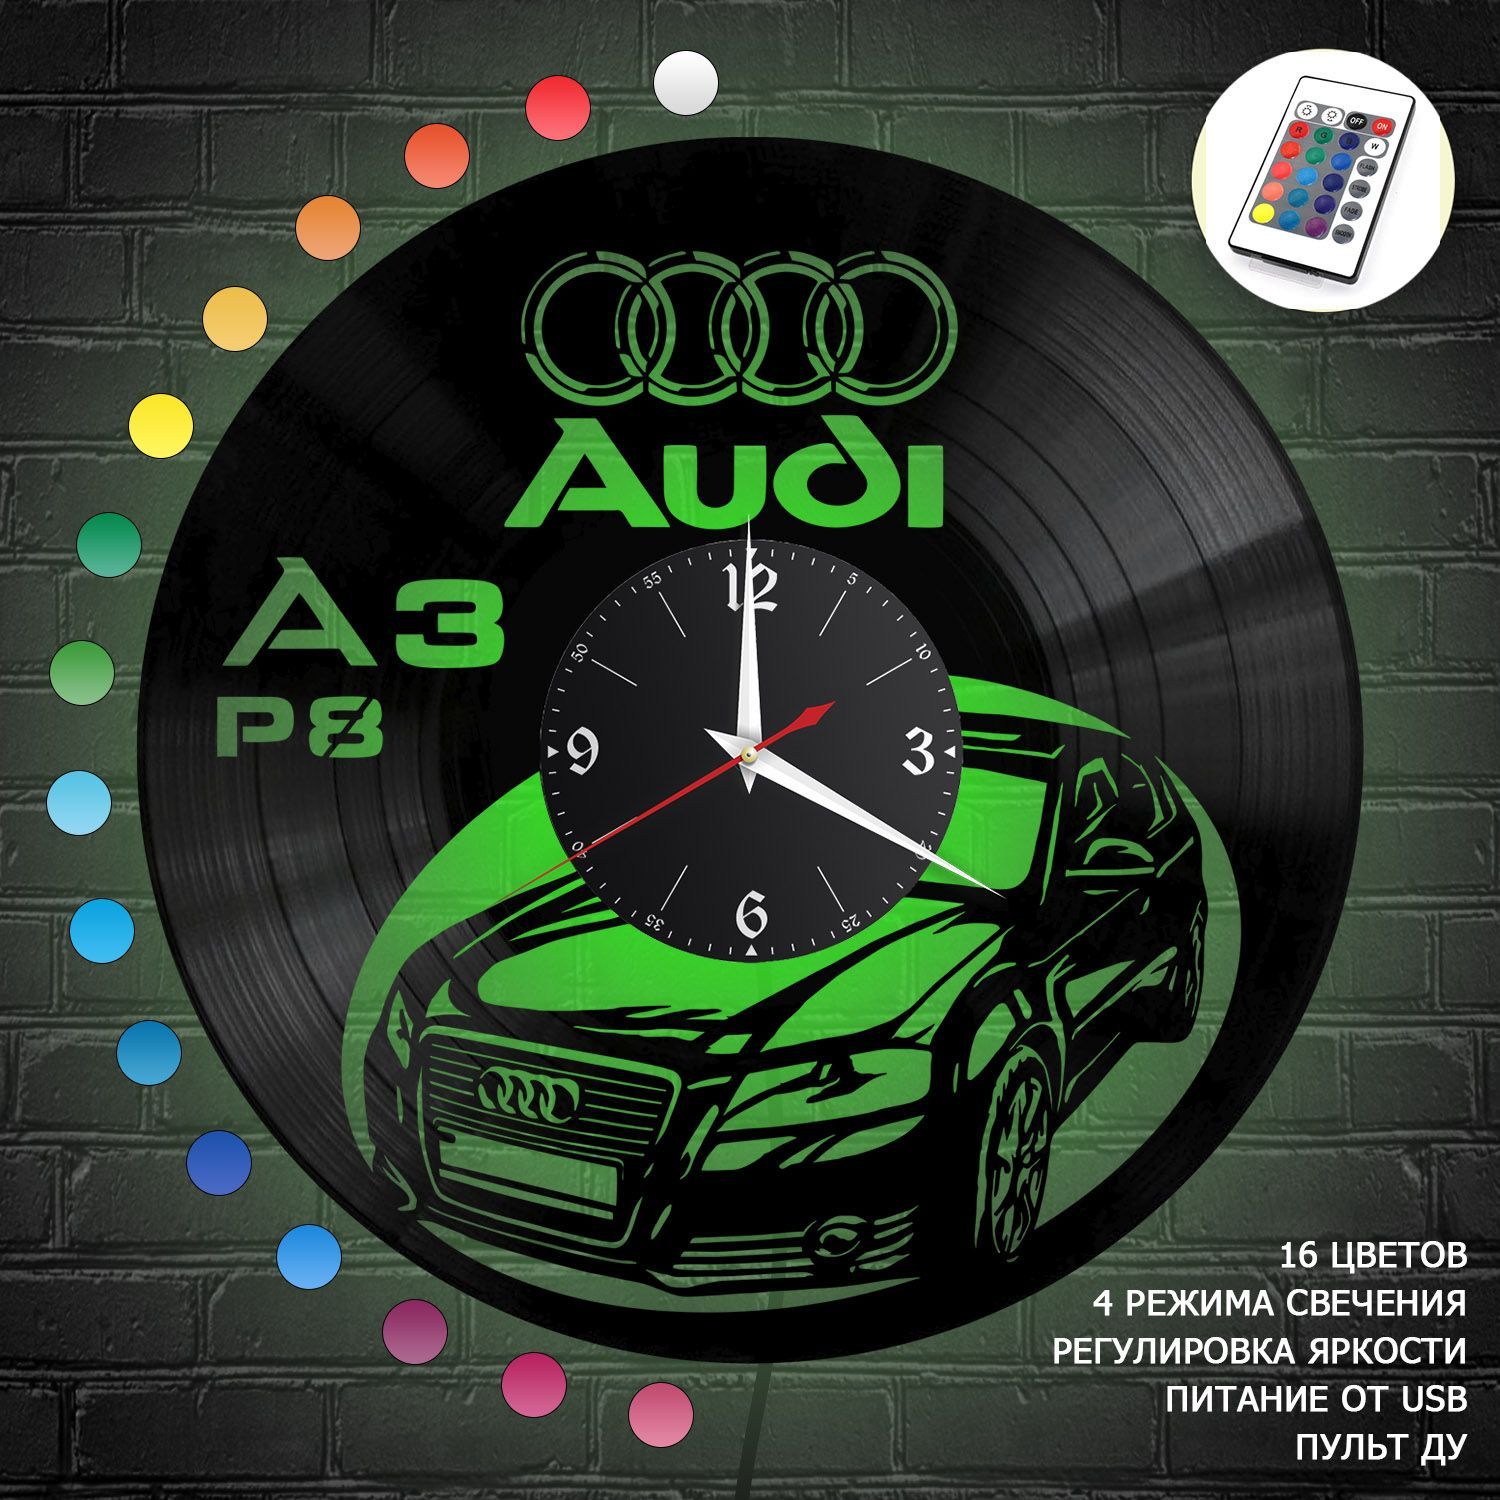 Часы с подсветкой "Ауди A3 P8 (Audi)" из винила, №9 VC-12202-RGB